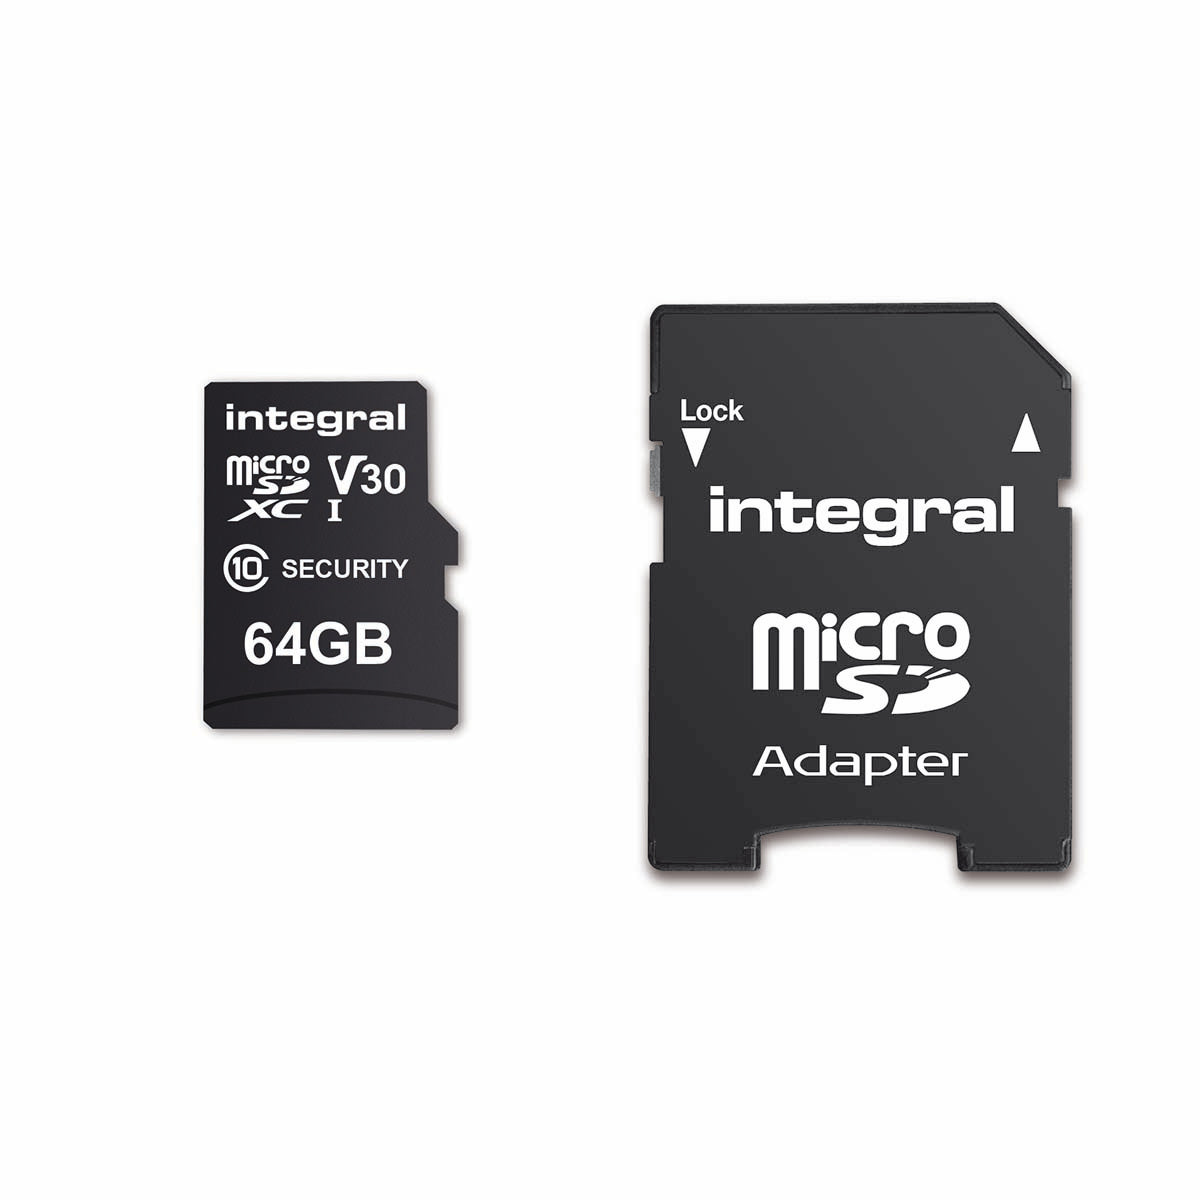 64 GB Überwachungskamera microSD-Karte für Dashcams, Home Cams, CCTV, Body Cams & Drohnen